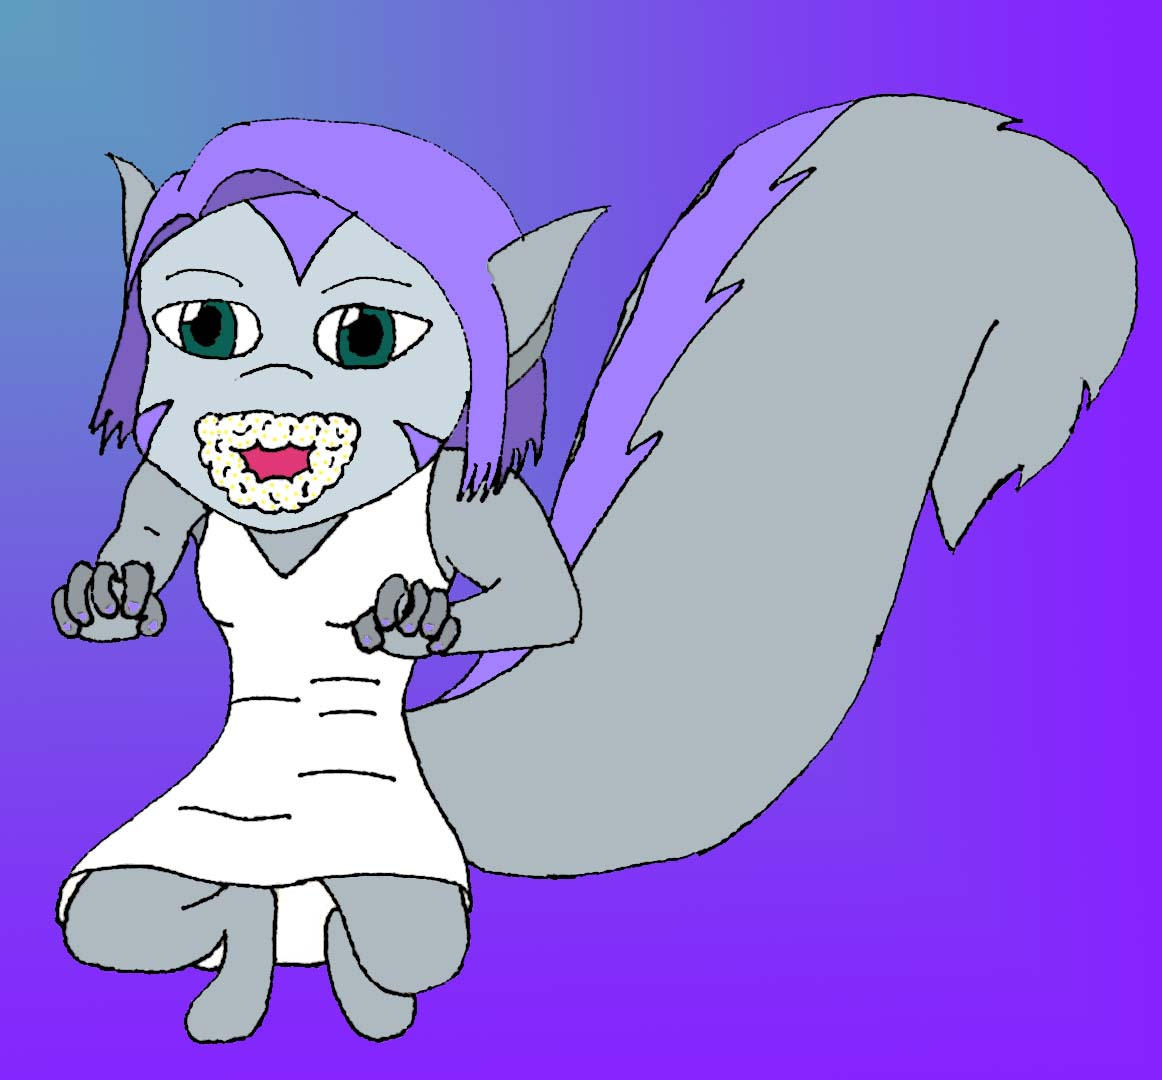 Rabid squirrel-girl by frozen-light on DeviantArt